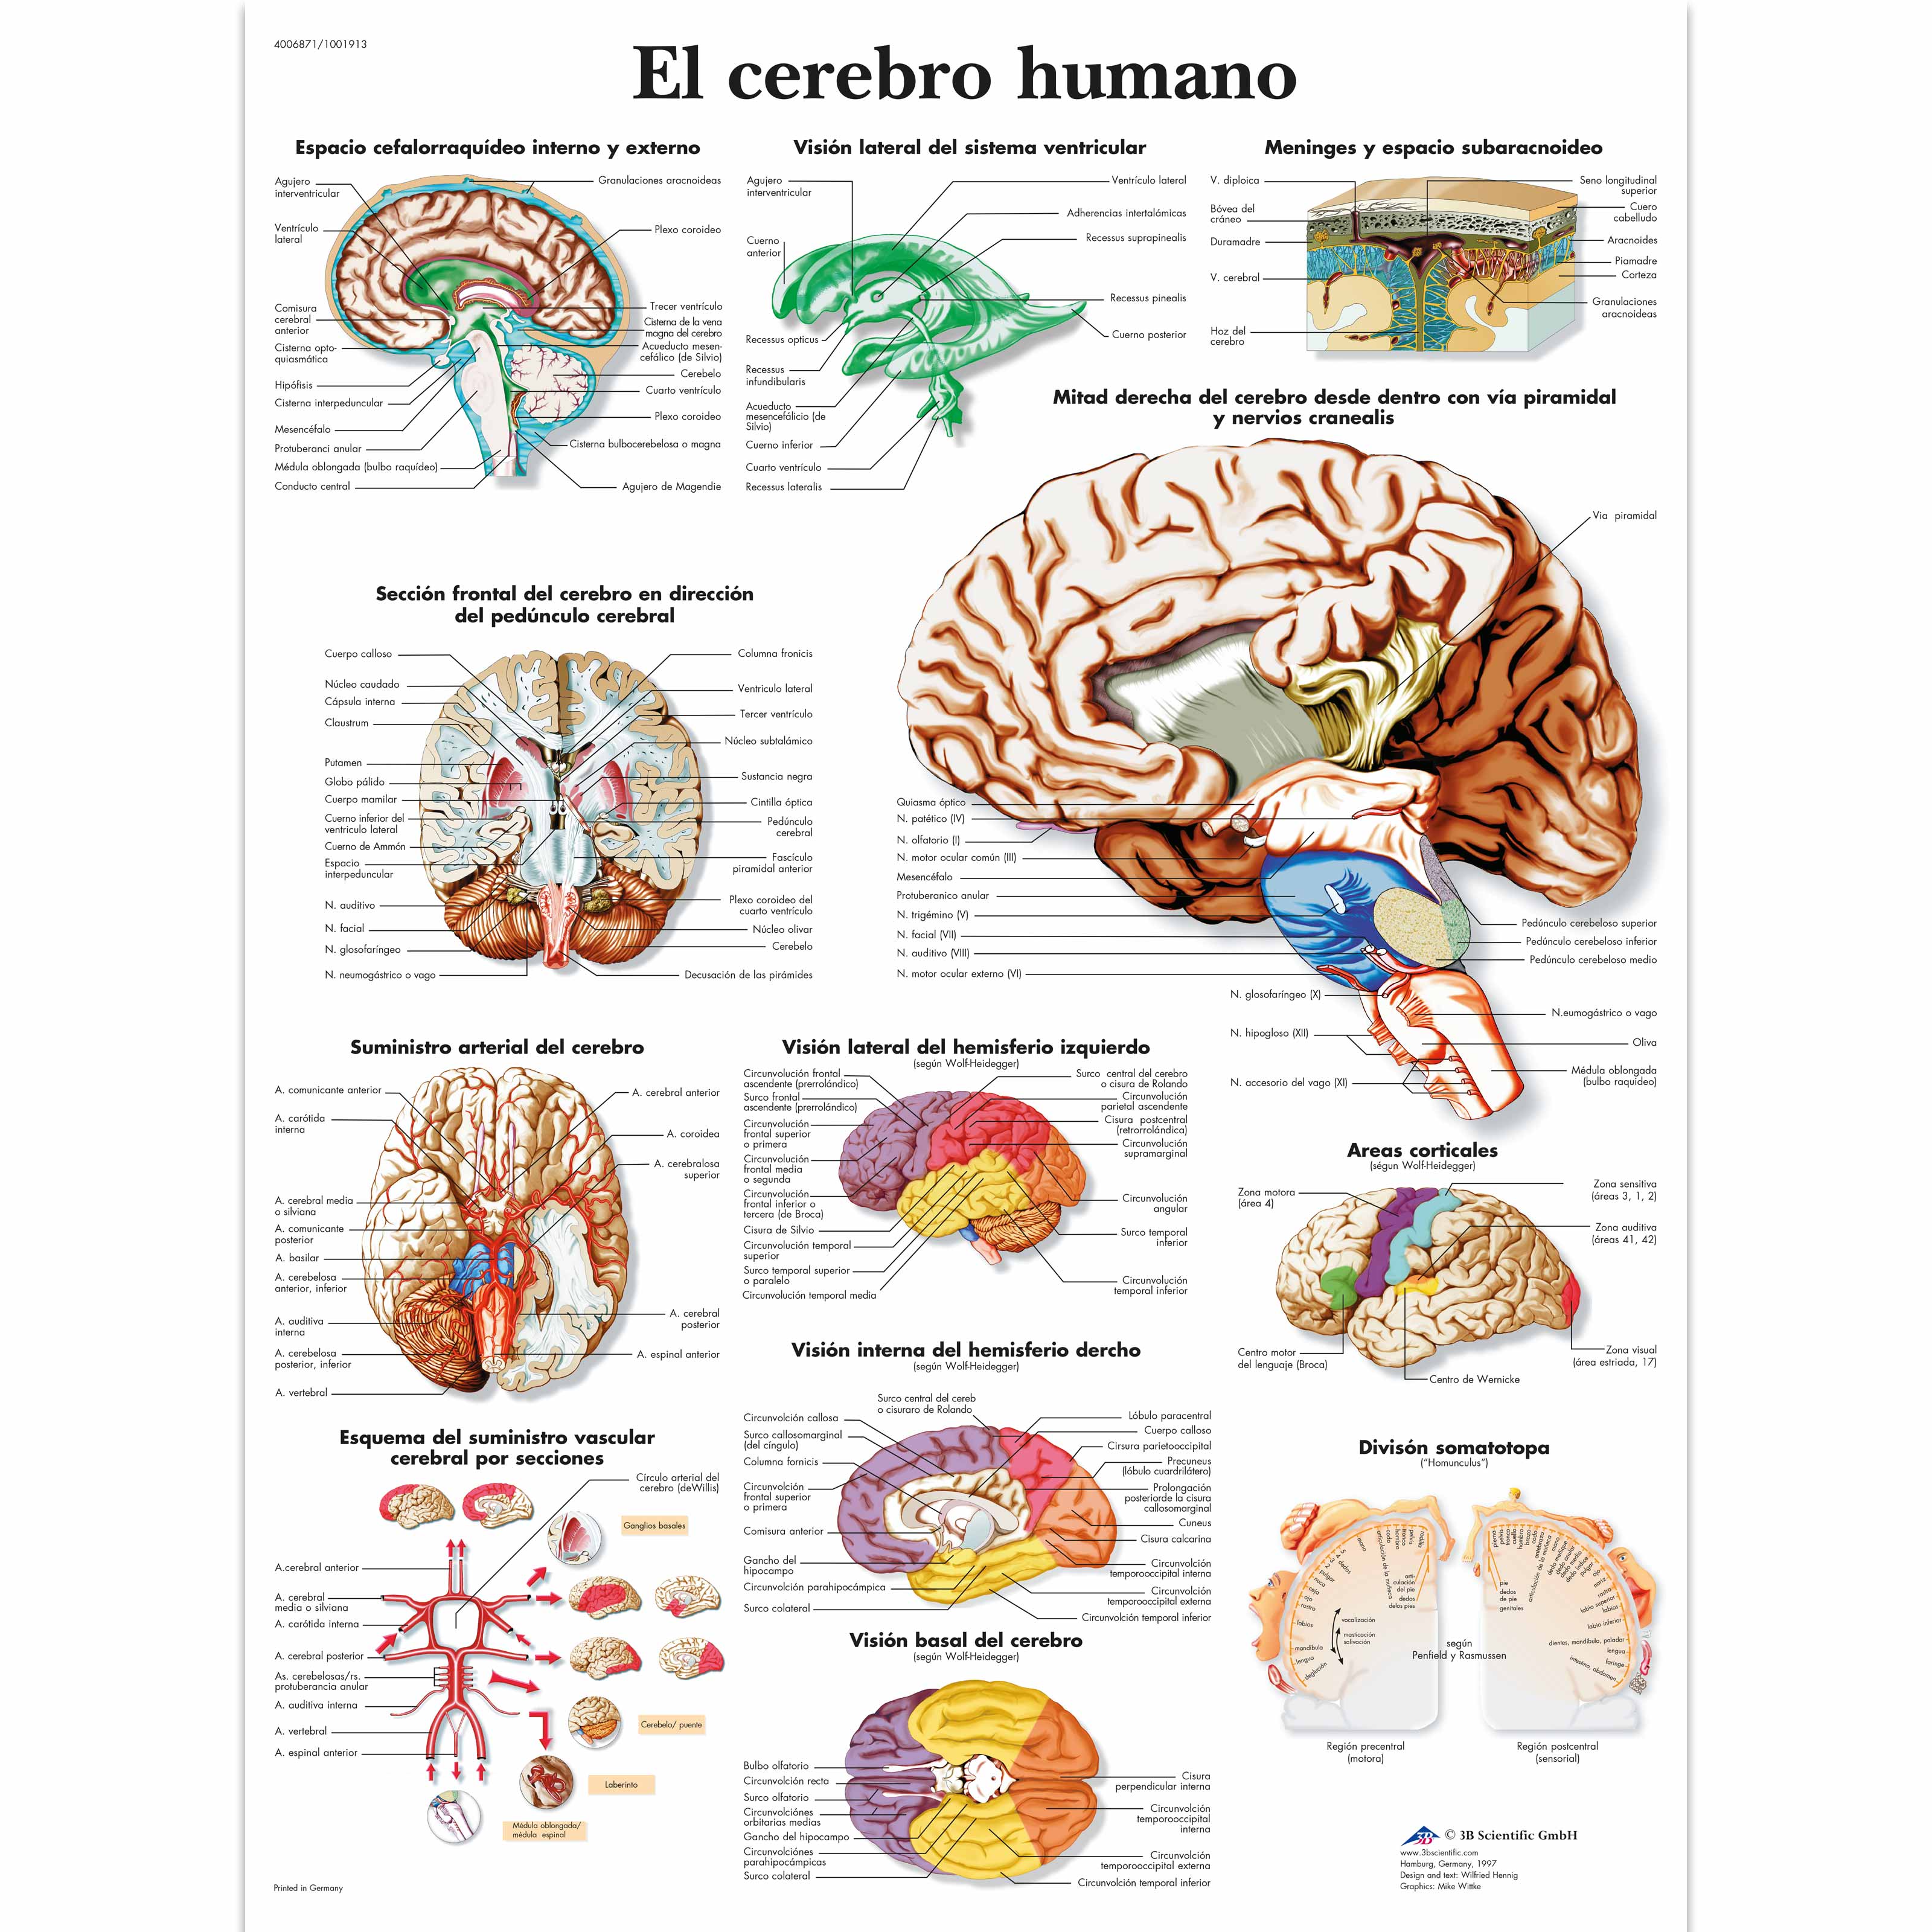 anatomia del cerebro